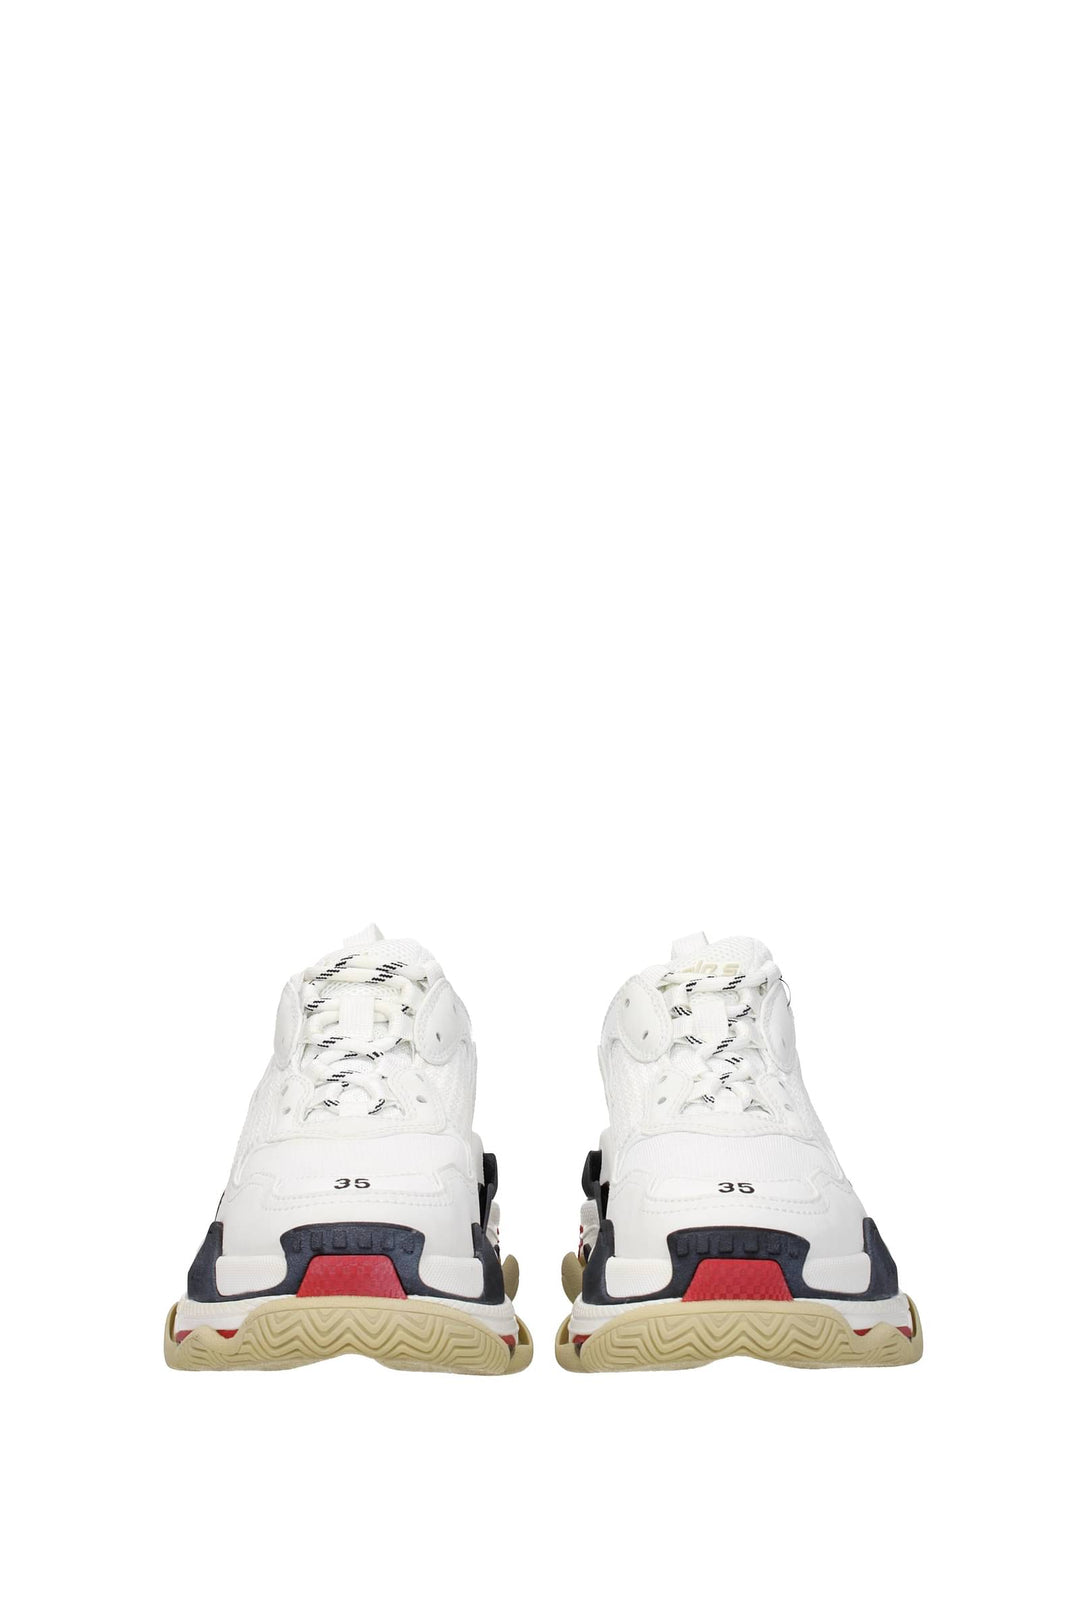 Sneakers Triple S Tessuto Bianco Rosso - Balenciaga - Donna